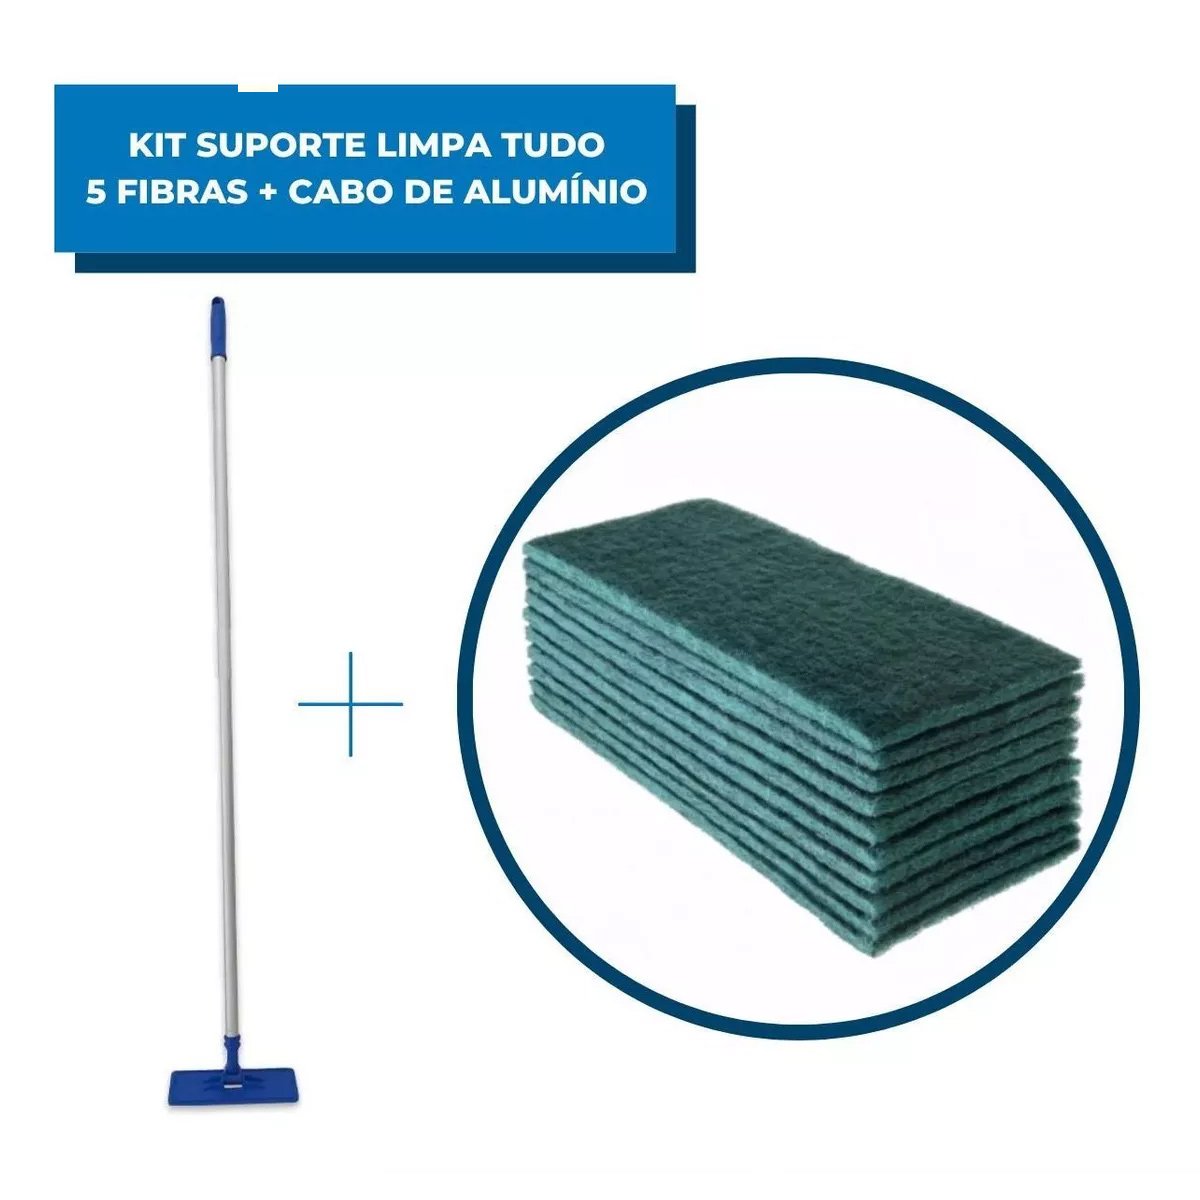 Kit Suporte Limpa Tudo e Cabo Alumínio 1.40 M com 5 Fibras de Limpeza Pesada Verde para Pisos - 1